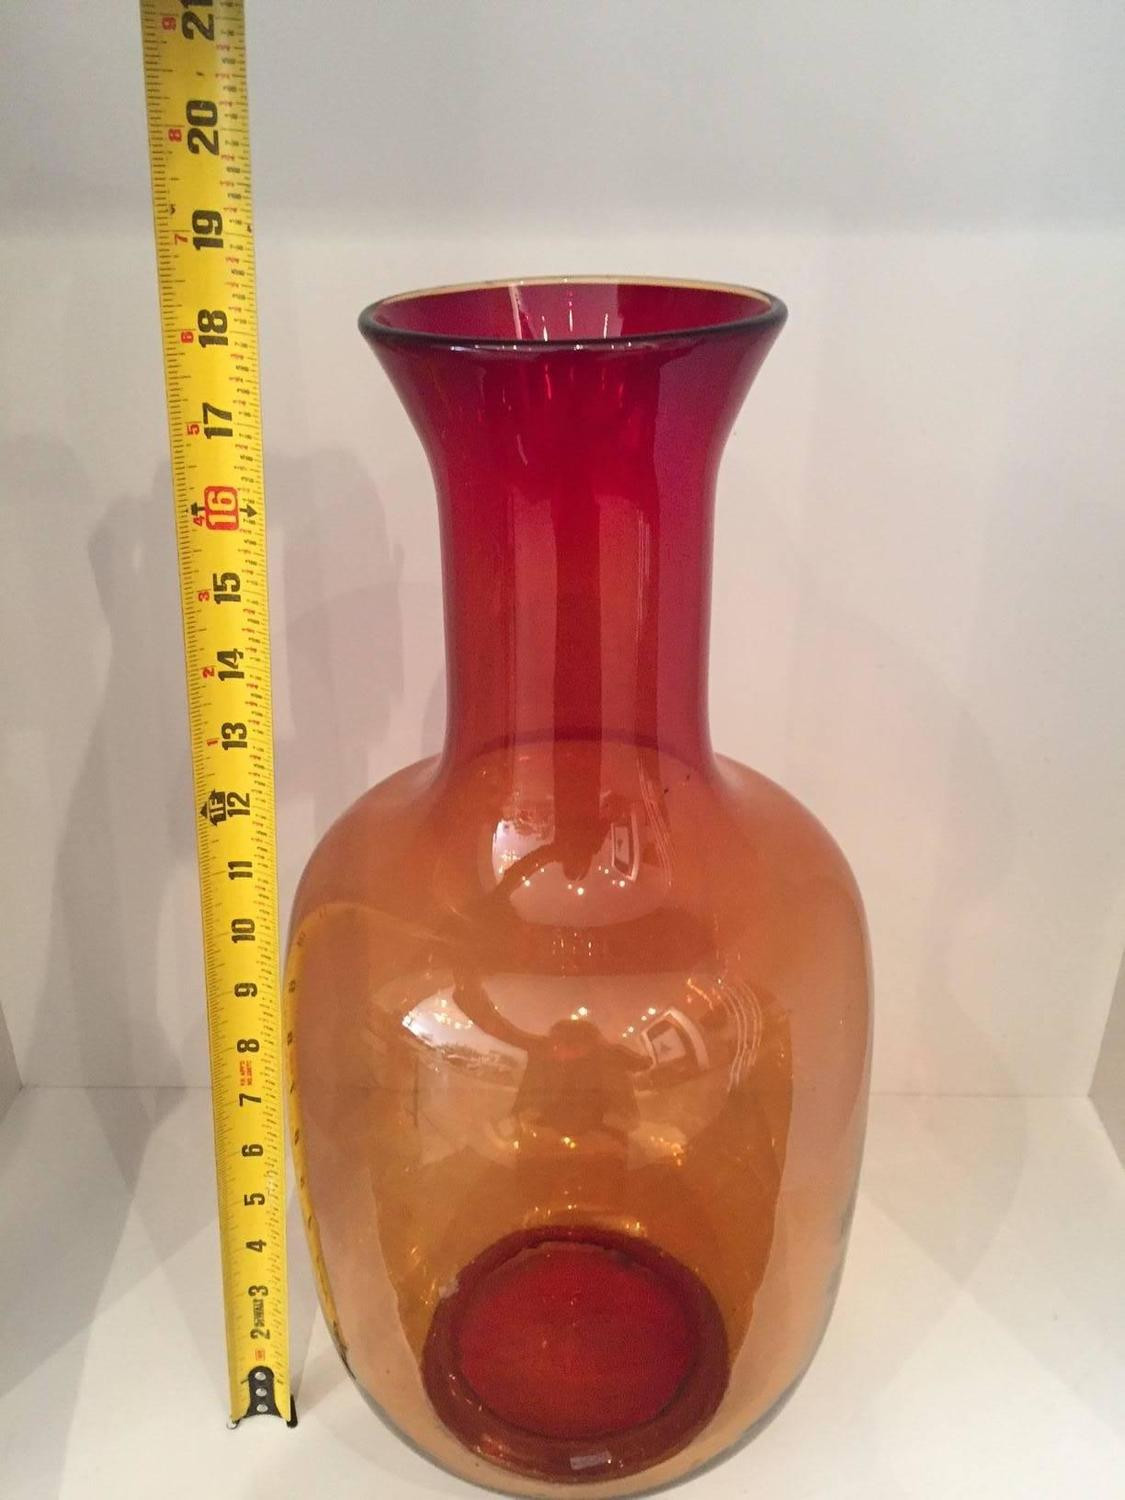 blenko vase shapes of joel myers for blenko glass orange vase for sale at 1stdibs inside large medium orange vase 1495470451438 z